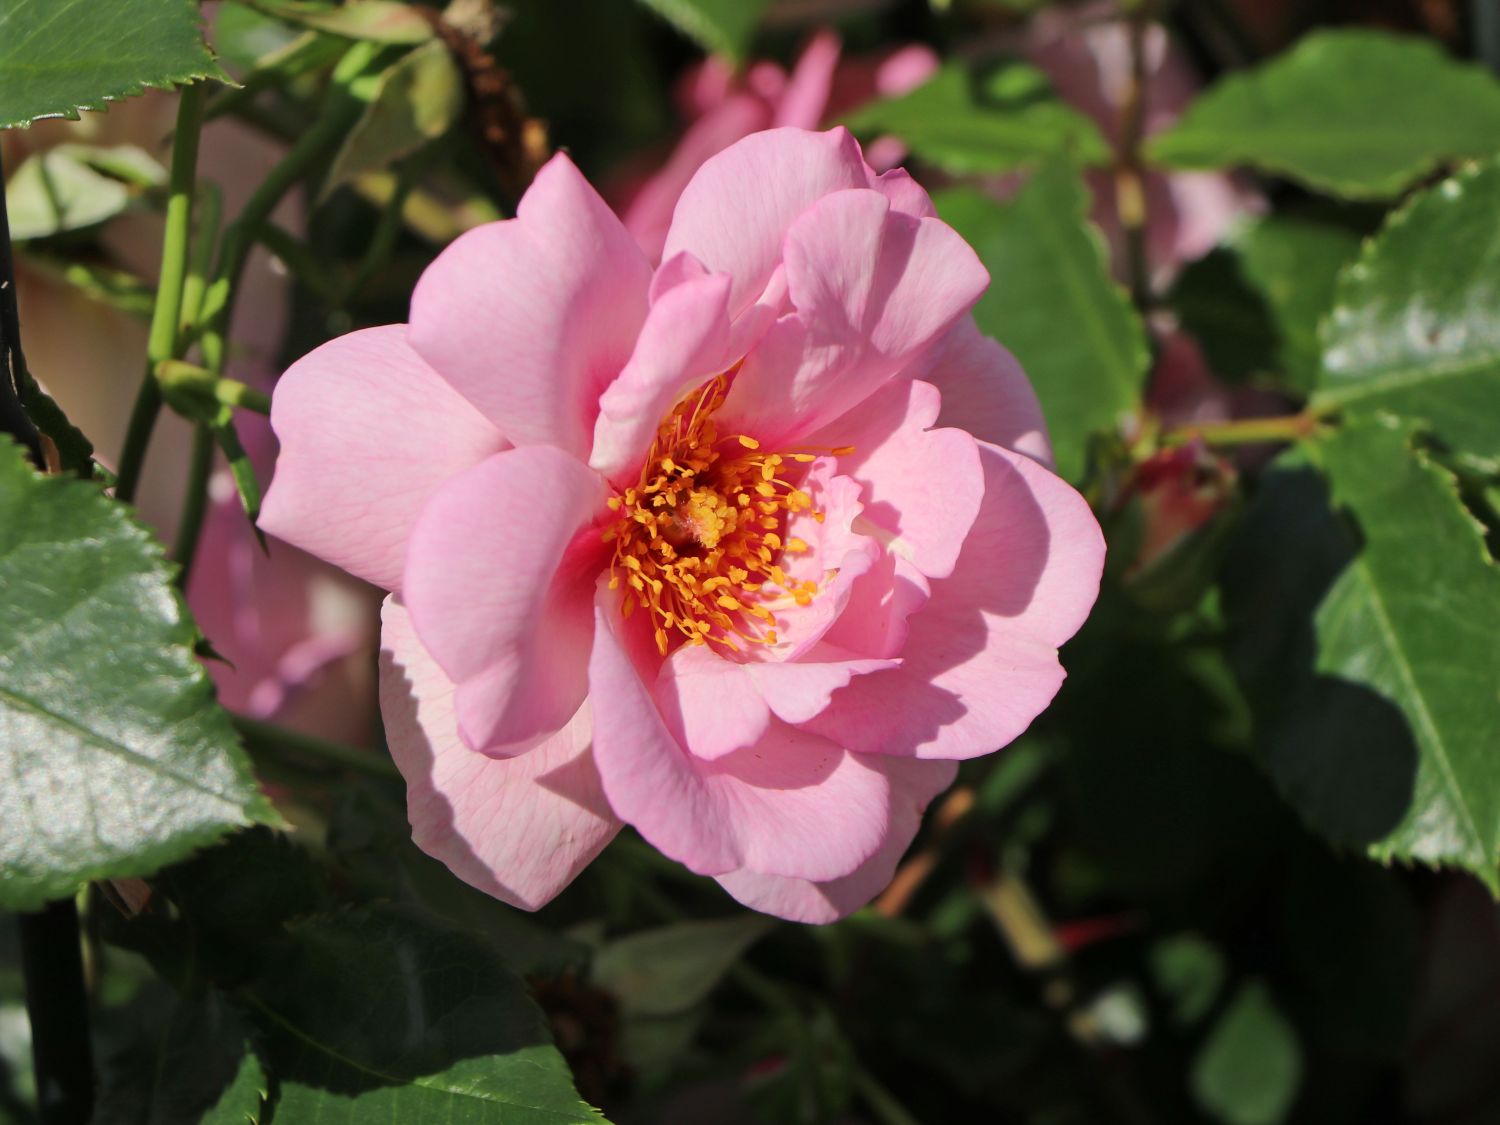 Strauchrose Orienta ® 'Magnolia' - Beste Sorten & Rosen-Wissen